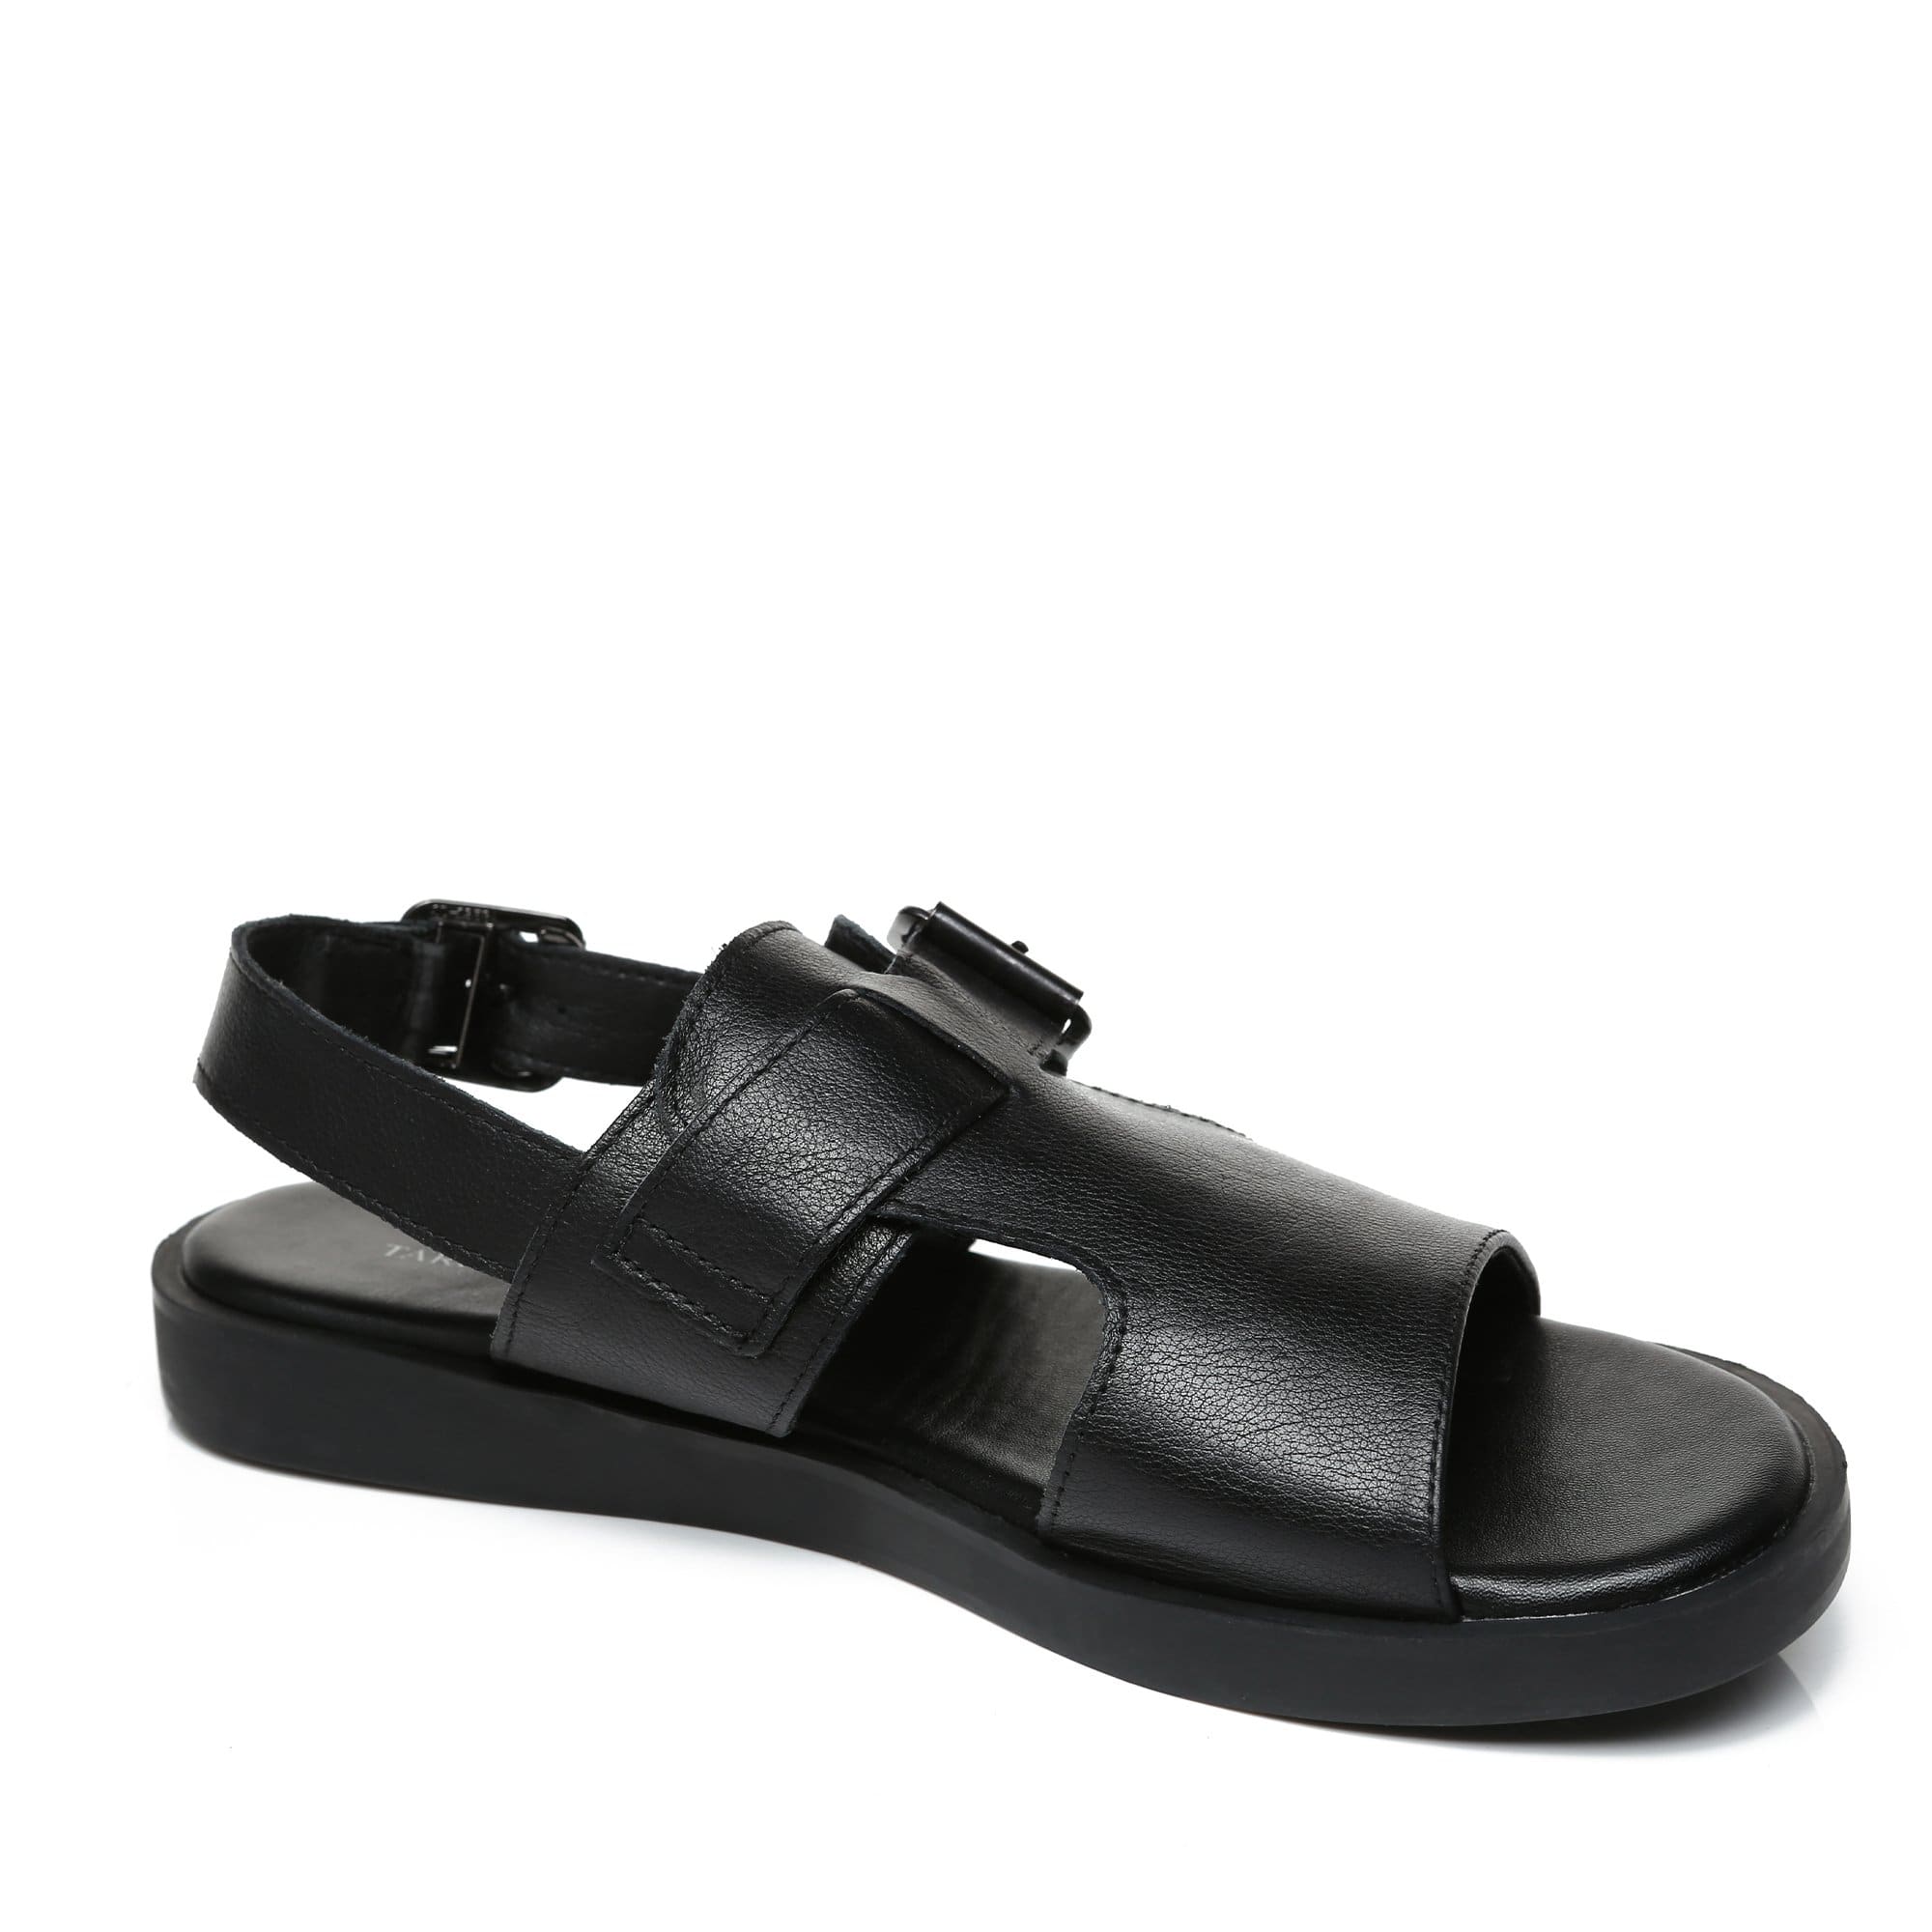 Cha-cha Leather Sandals